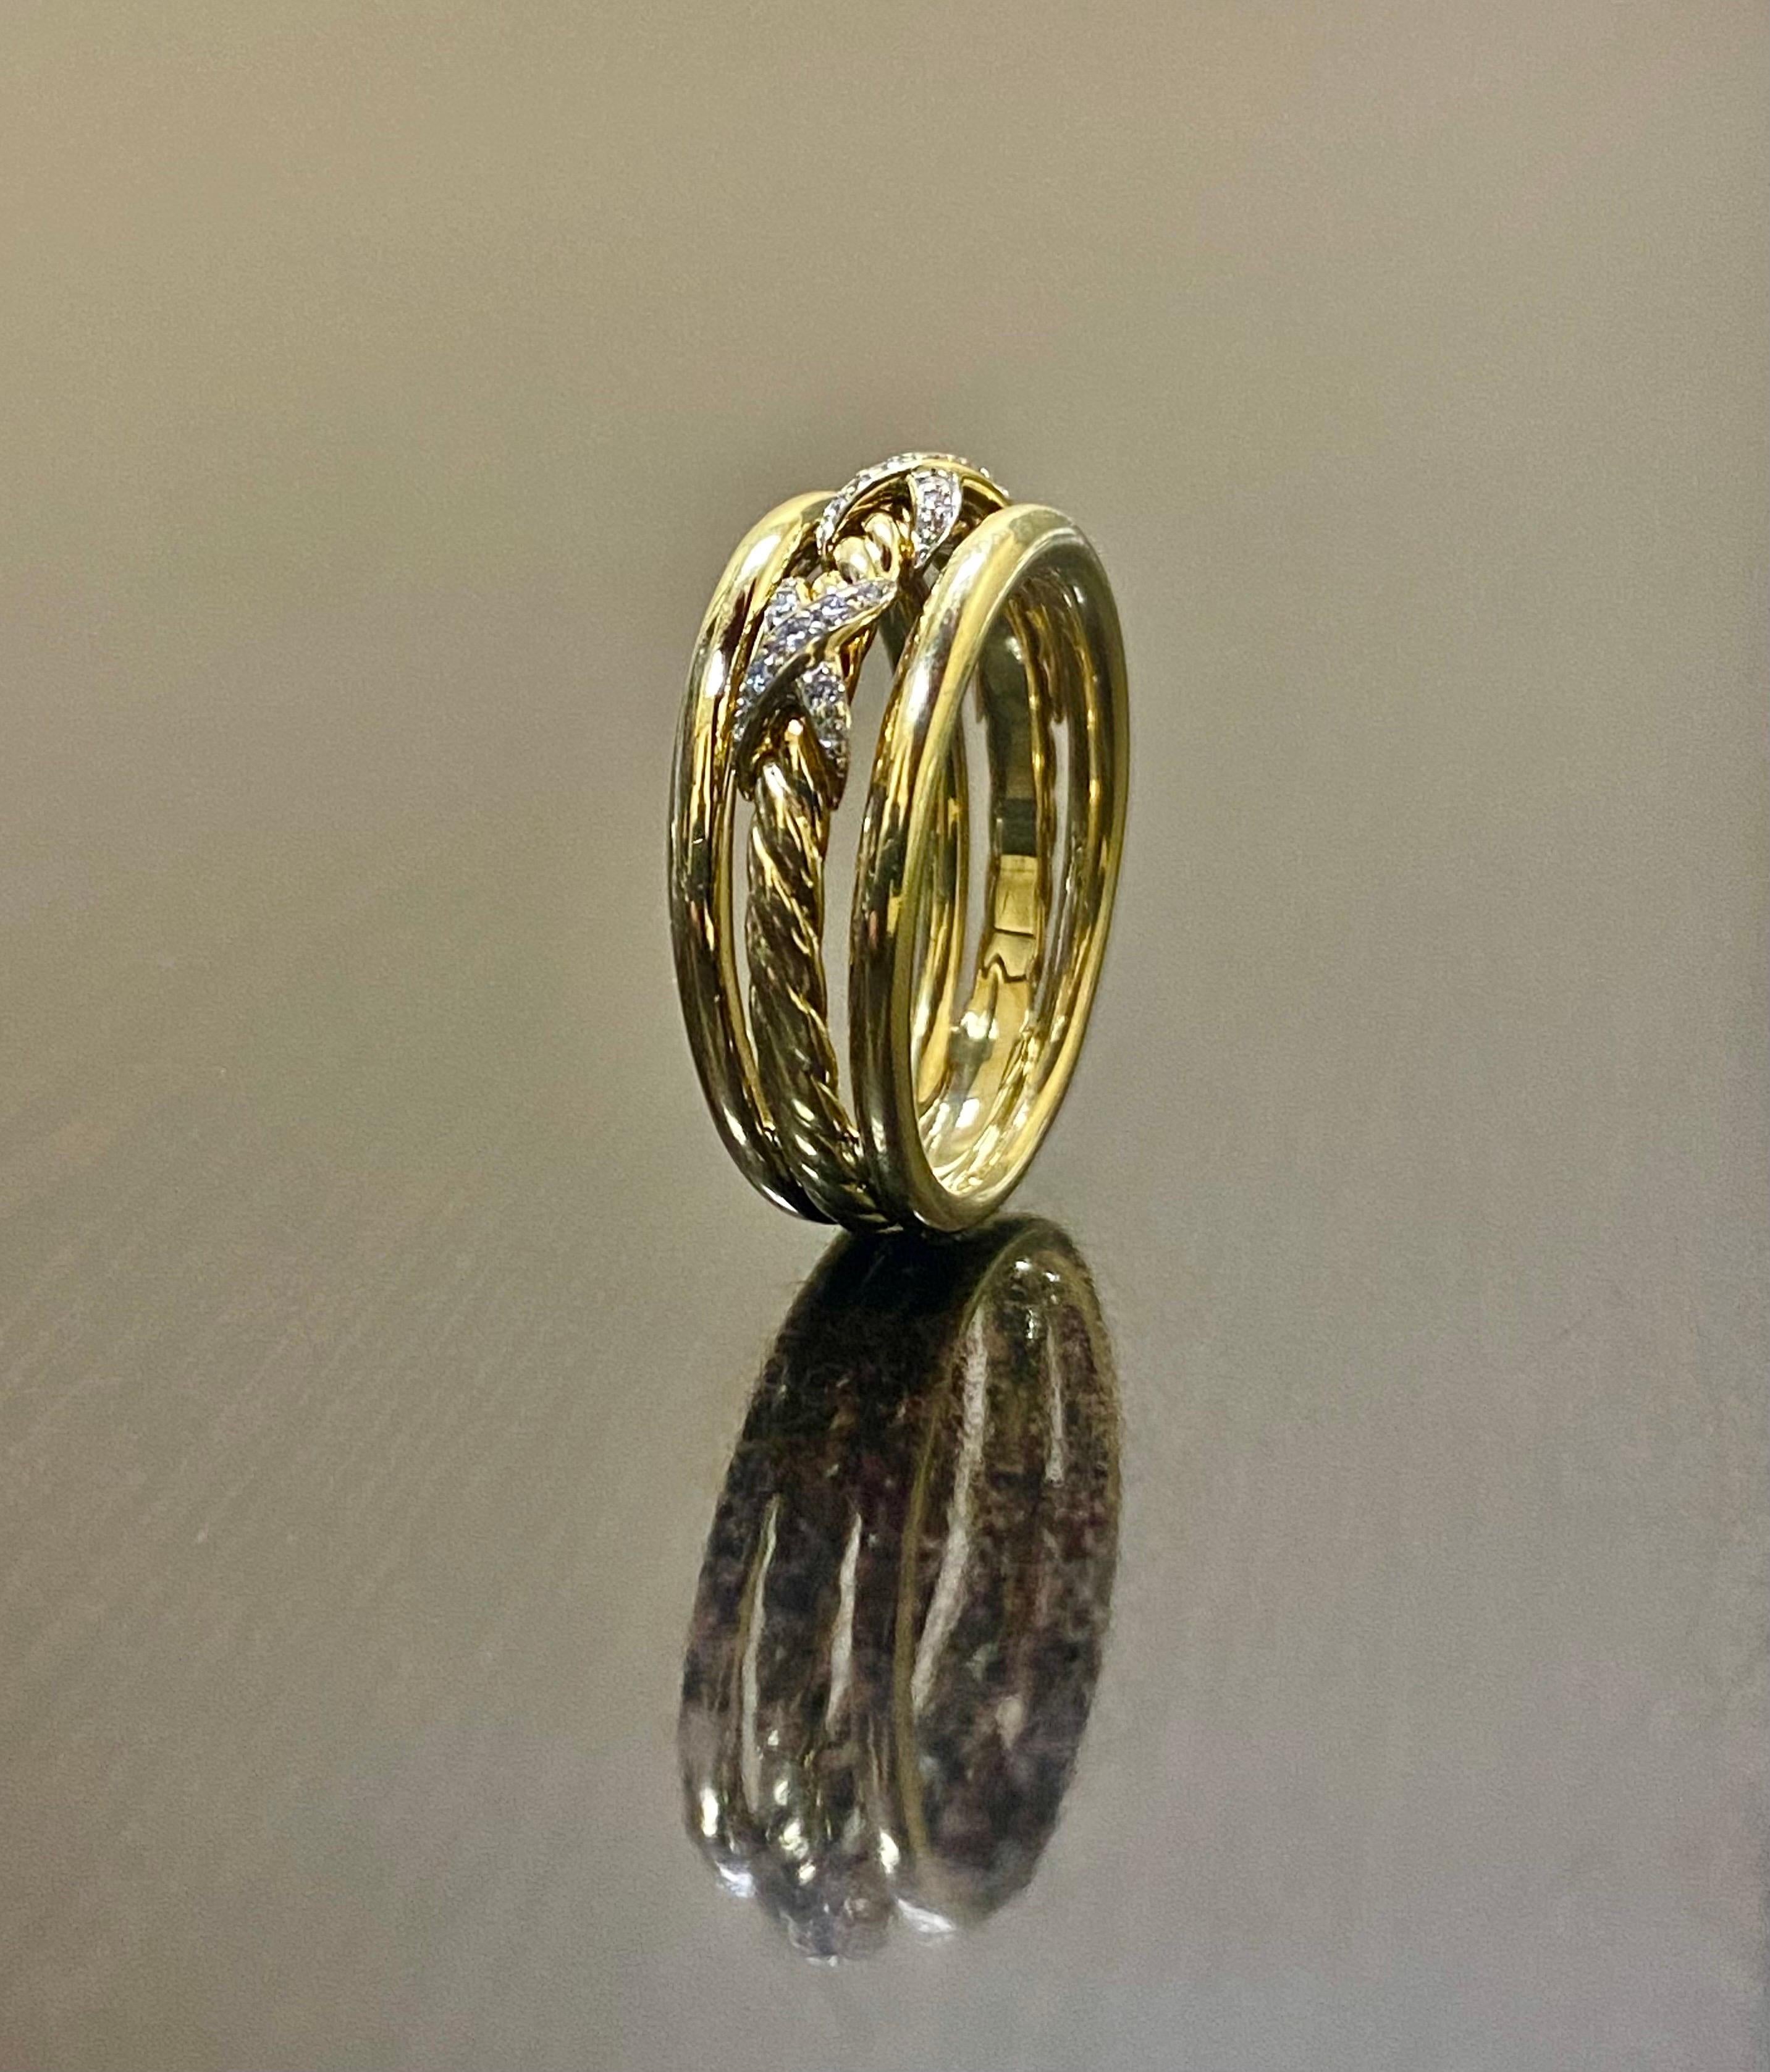 DeKara Design Designer Collection'S

Metall- 18K Gelbgold, .750.

Steine- 31 runde Diamanten F-G Farbe VS2 Klarheit 0,21 Karat.

Authentische David Yurman 18K Gelbgold Diamond Three X Diamond Ring von der Crossover Collection'S. Der Ring besteht aus